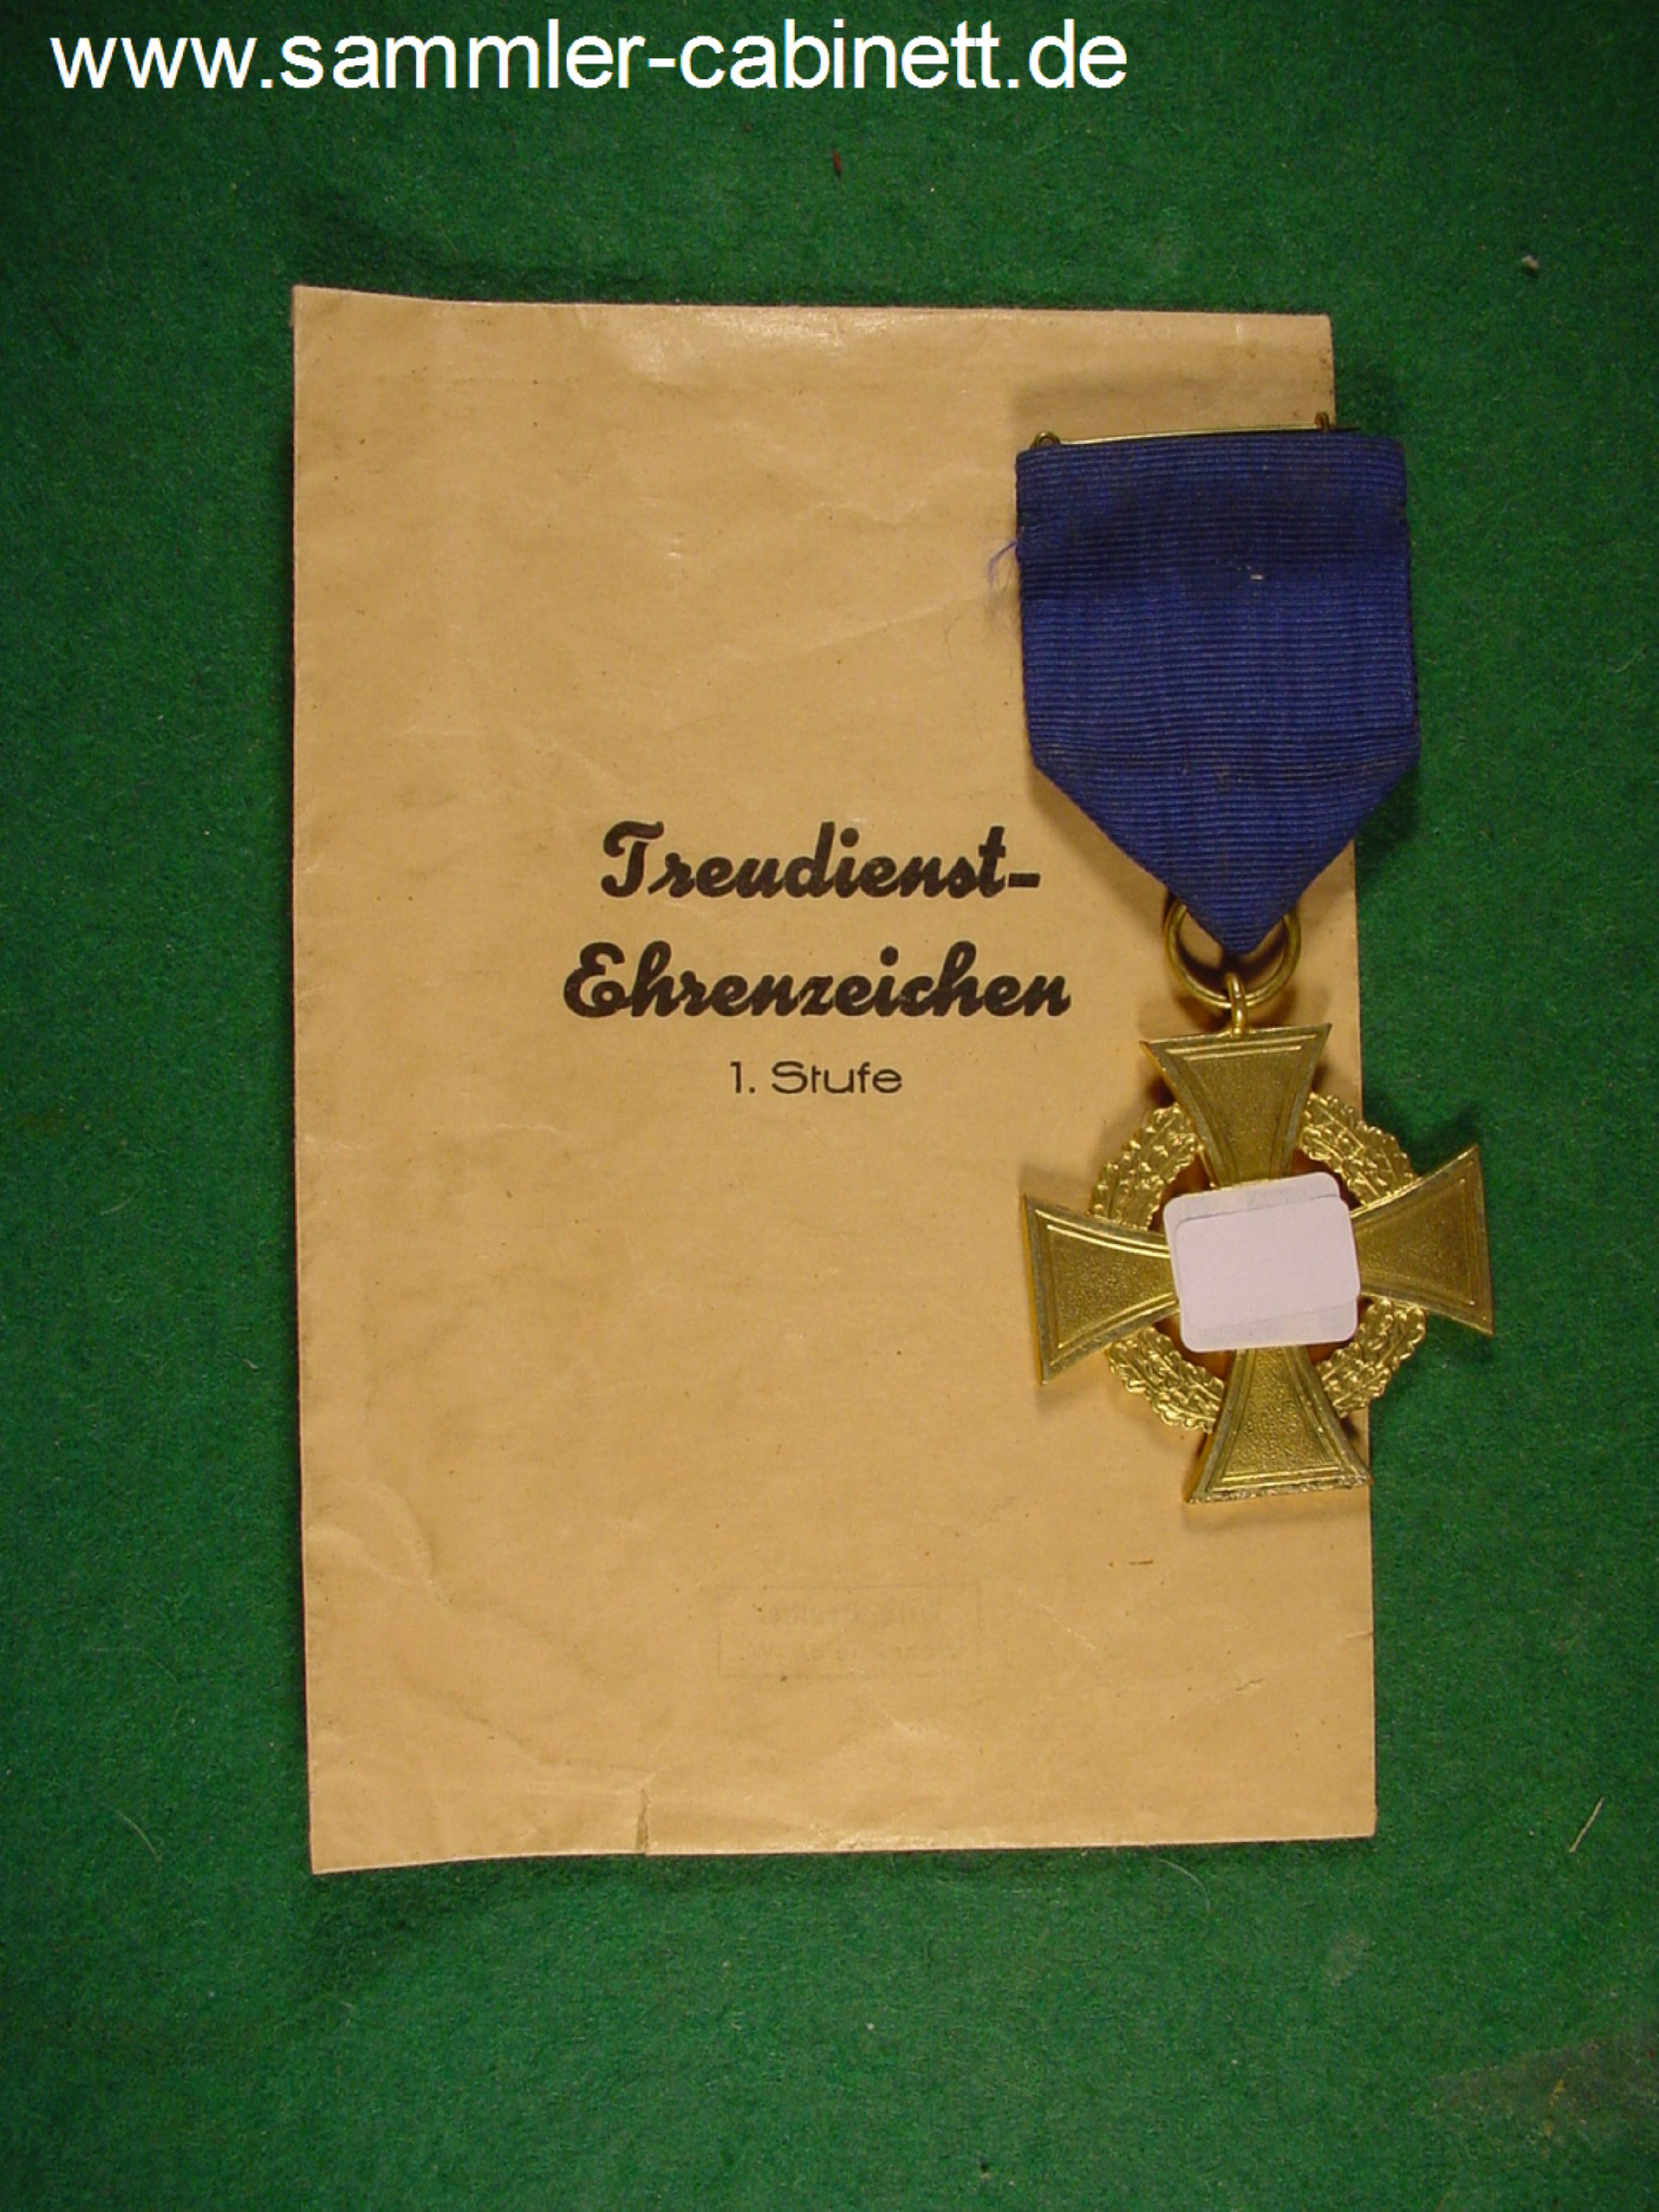 Treu - Dienst Auszeichnung für 40 Jahre - vergoldet,...